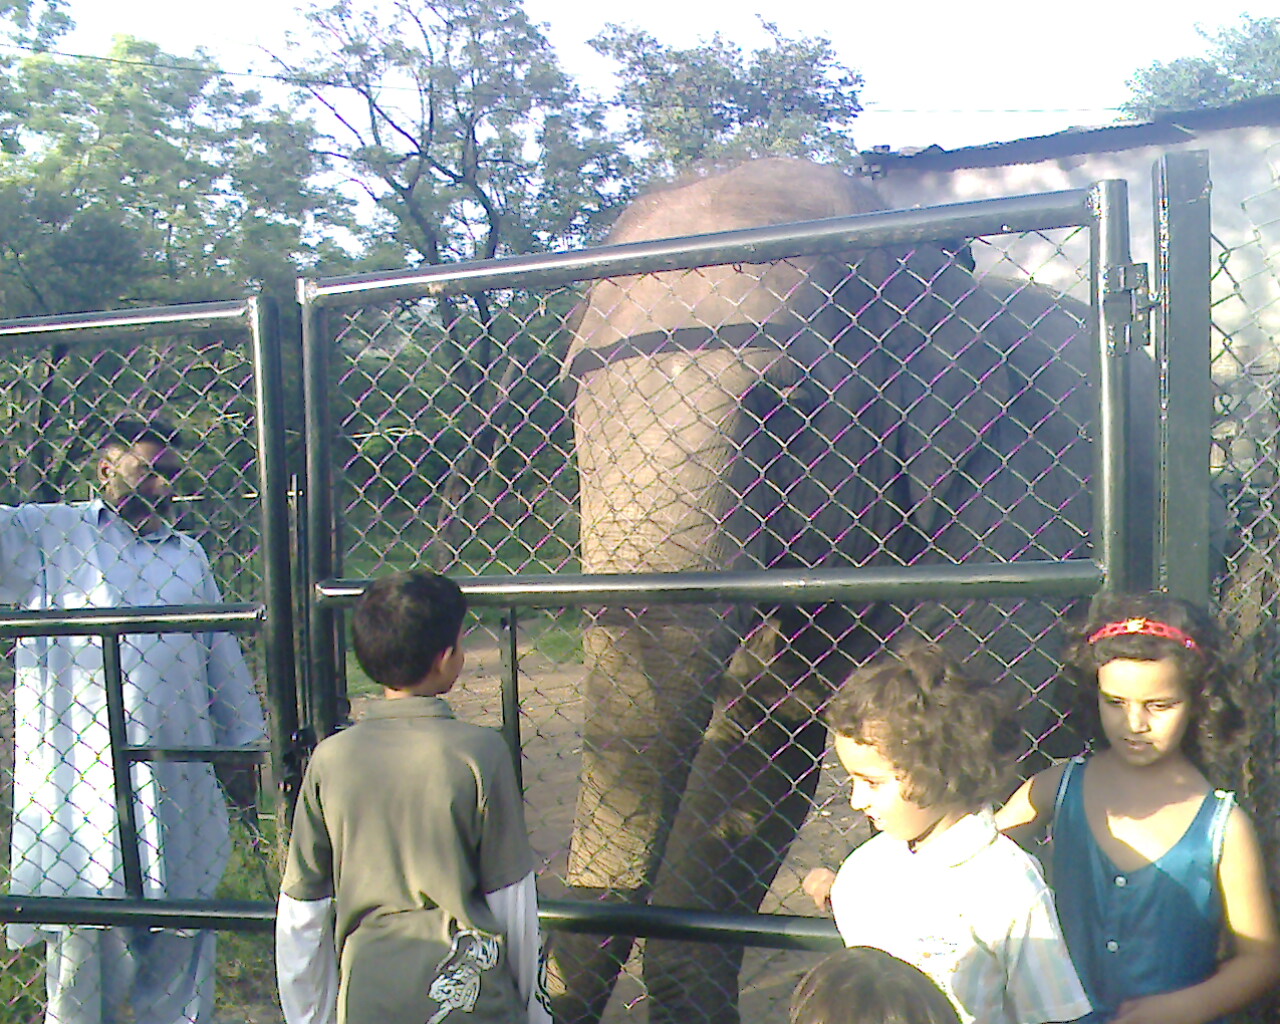 [Aina+Nawal+with+elephant.jpg]